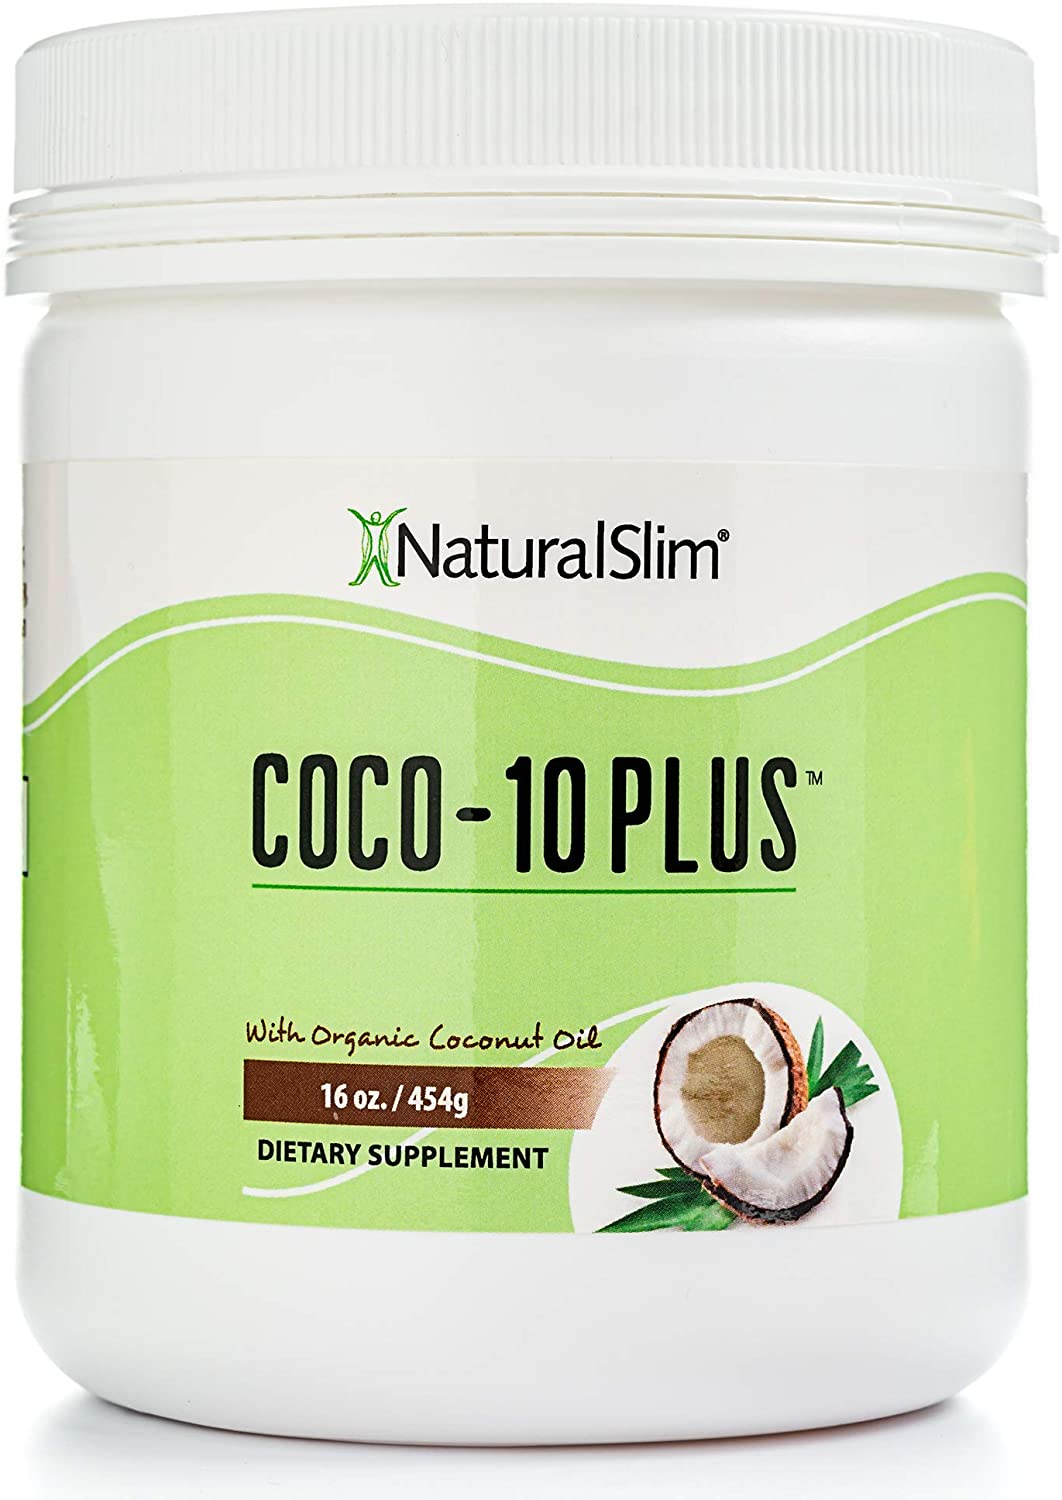 NaturalSlim Coco-10 Plus – Organic Coconut Oil USA